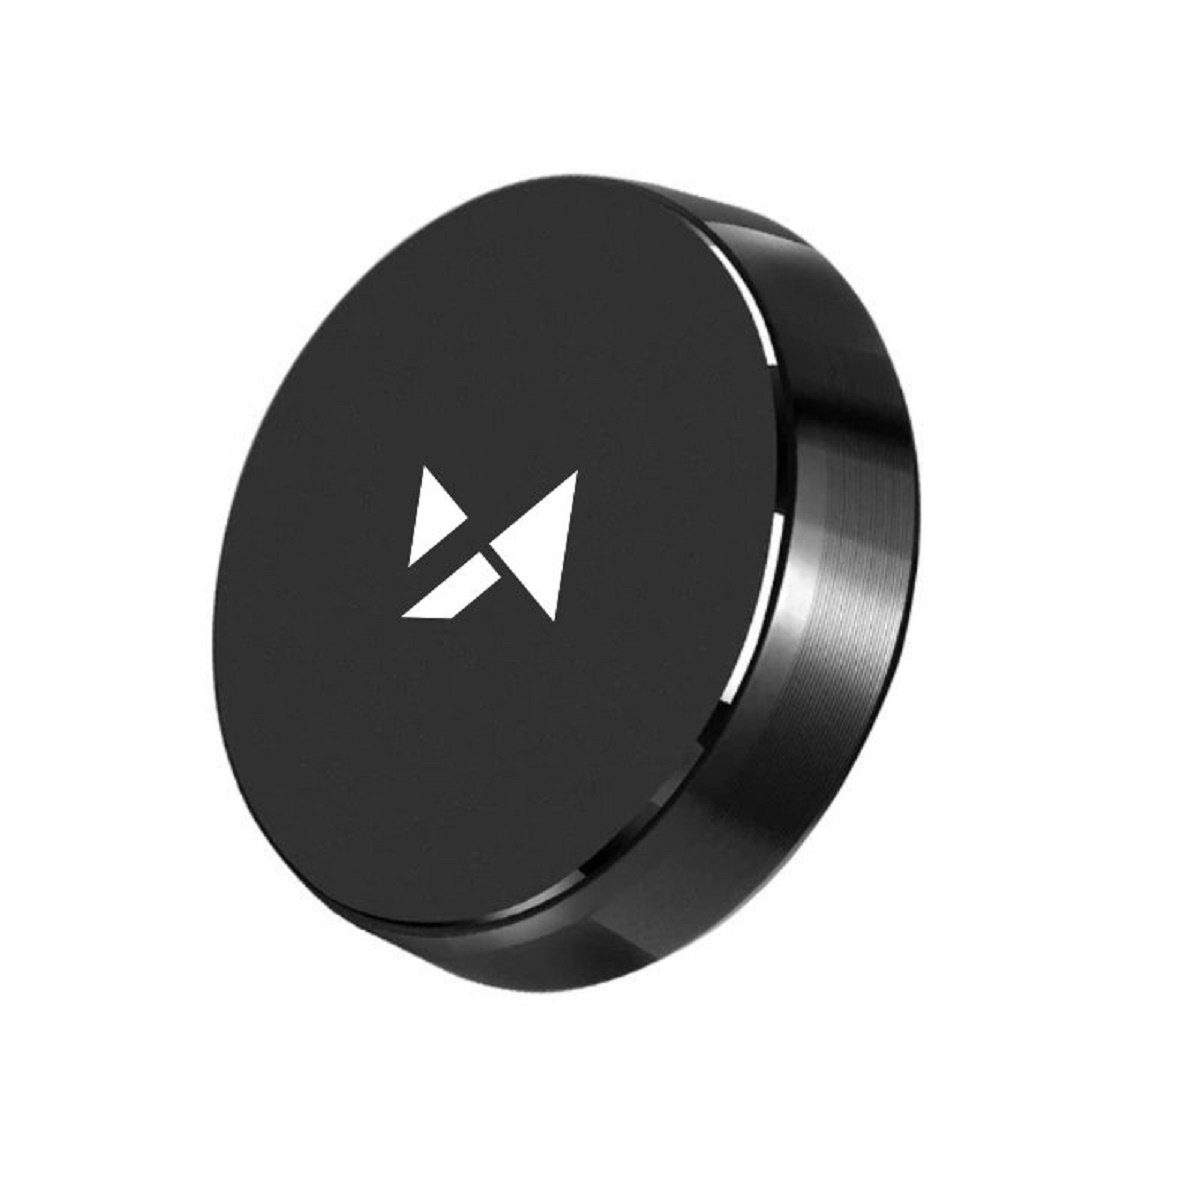 Dudao selbstklebend Auto Halterung Magnet Handyhalter für Armaturenbrett  schwarz Smartphone-Halterung